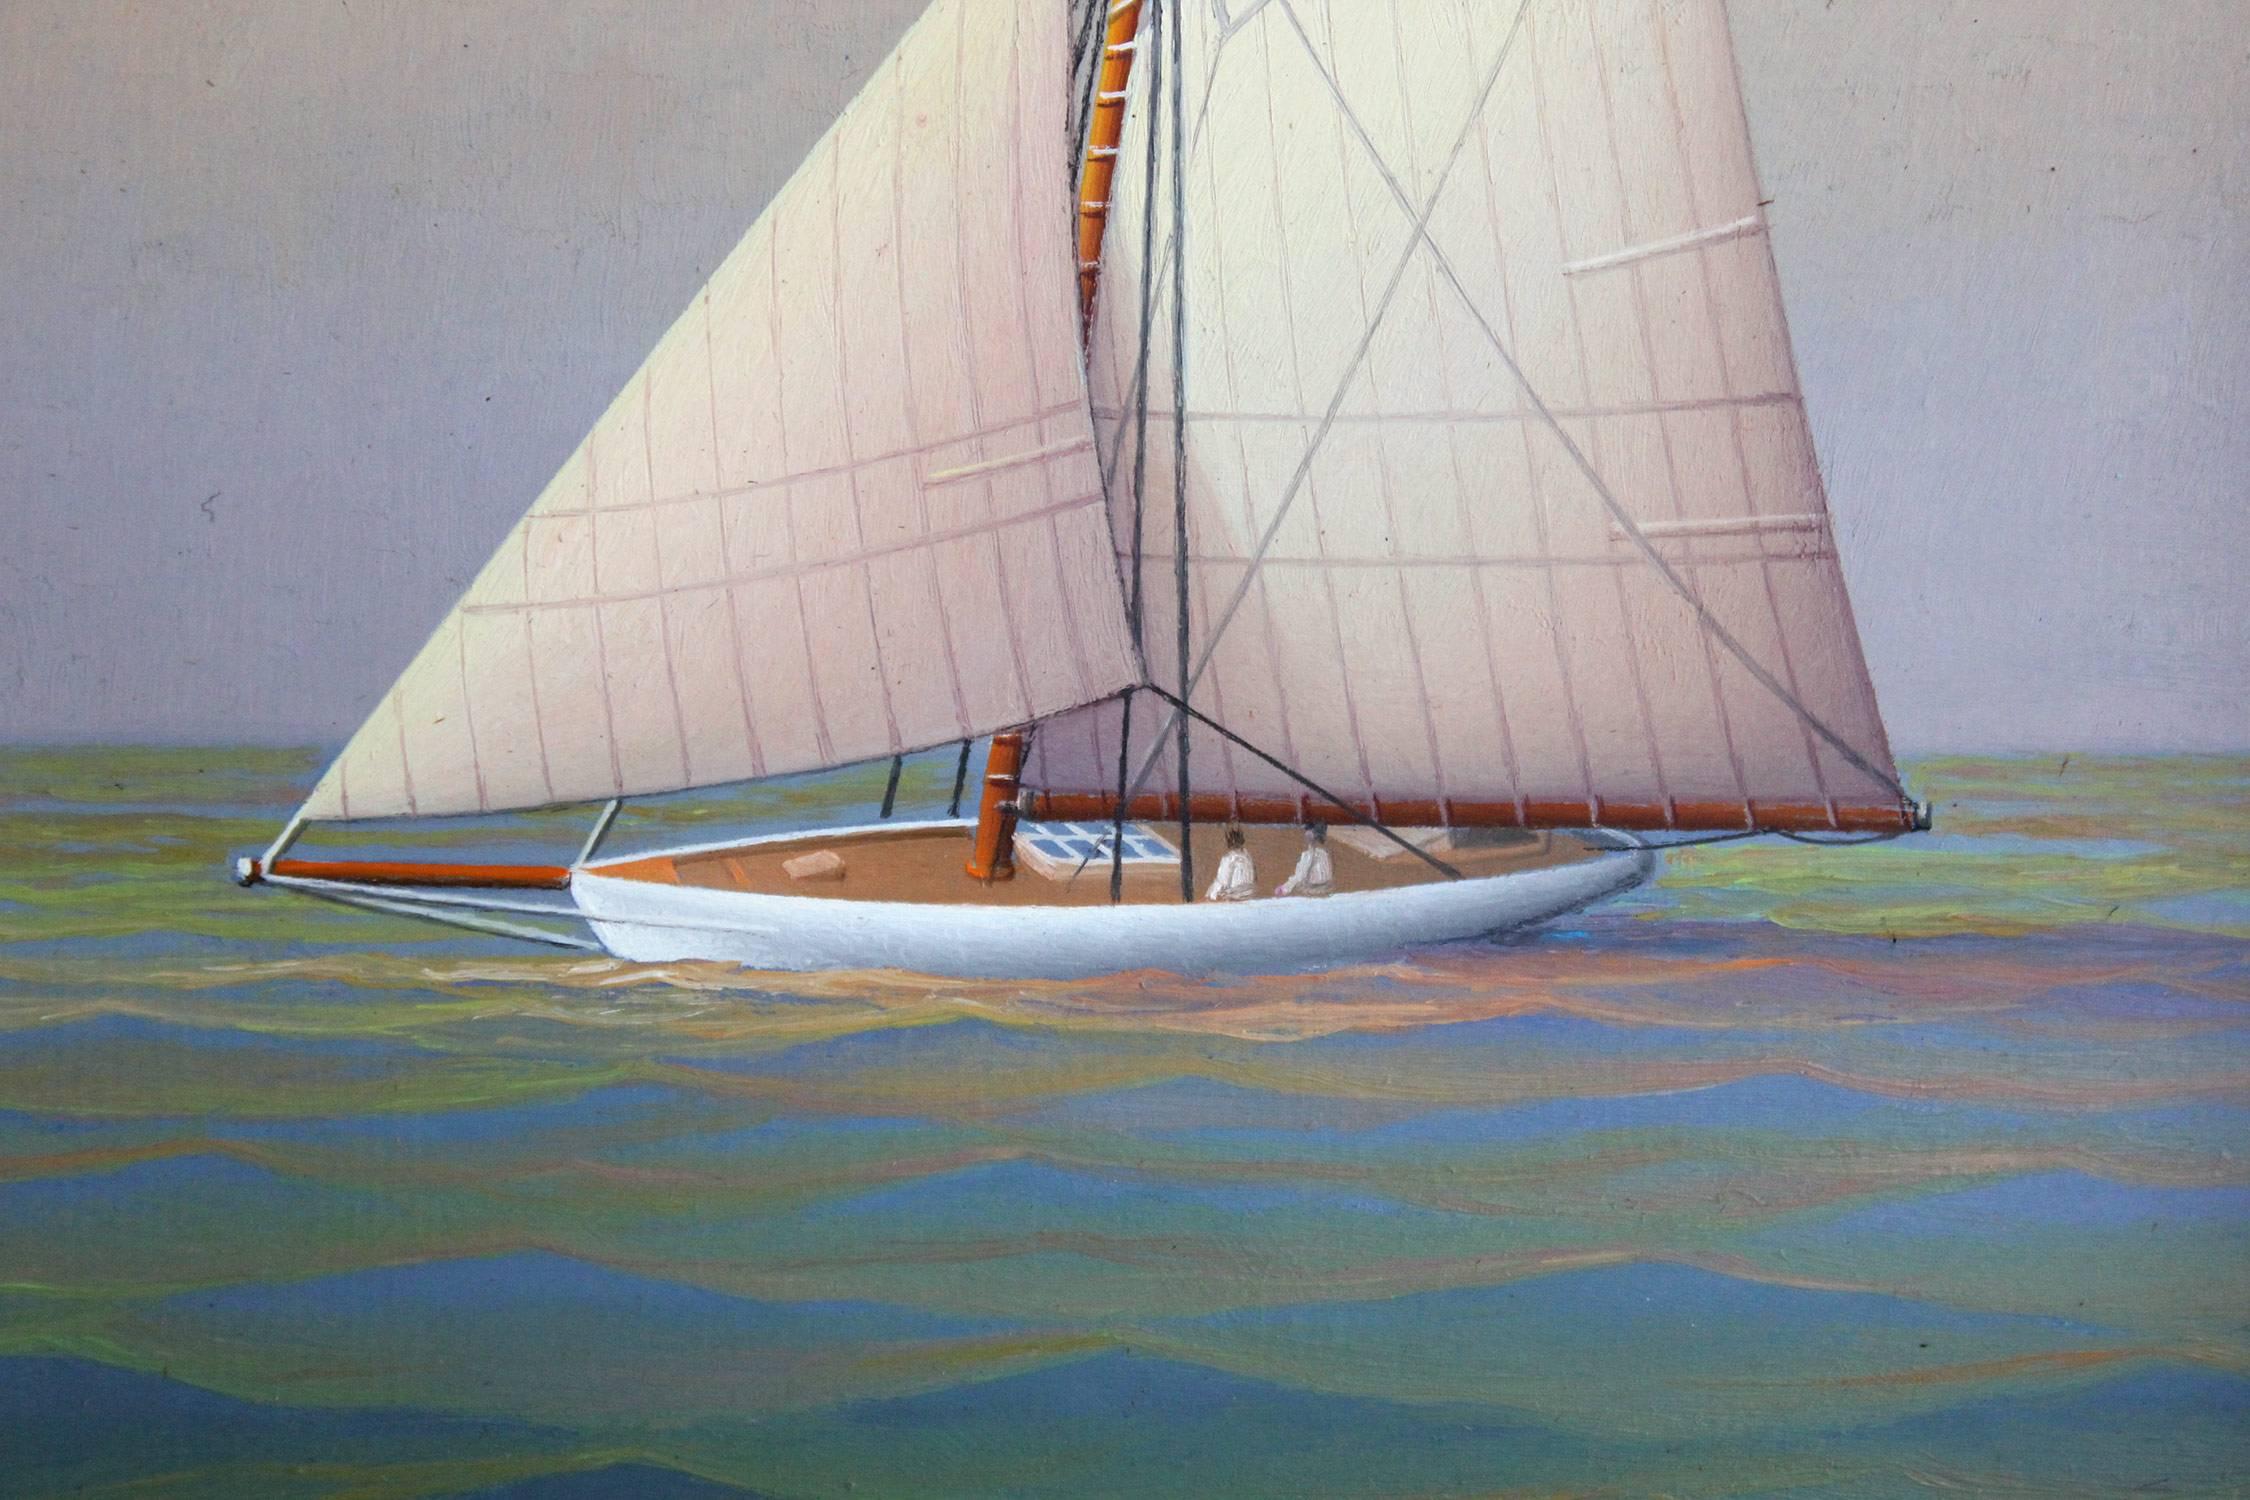 Sailing Westward - Brown Figurative Painting by George Nemethy